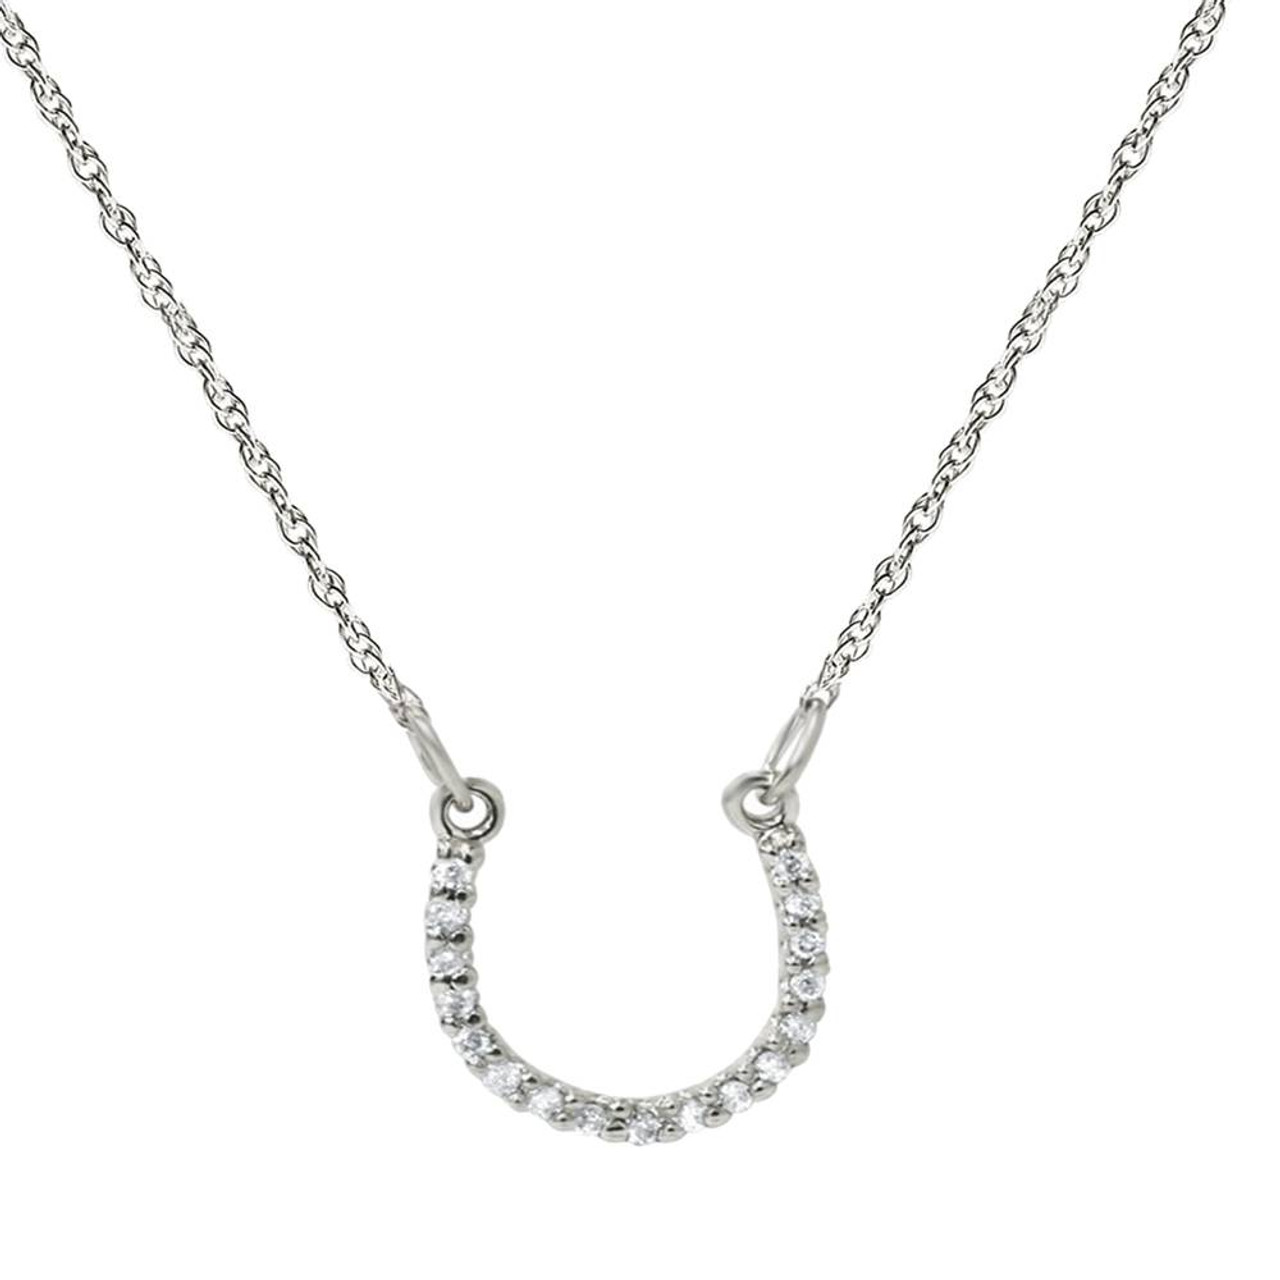 14K Rose Gold Diamond Horseshoe Necklace